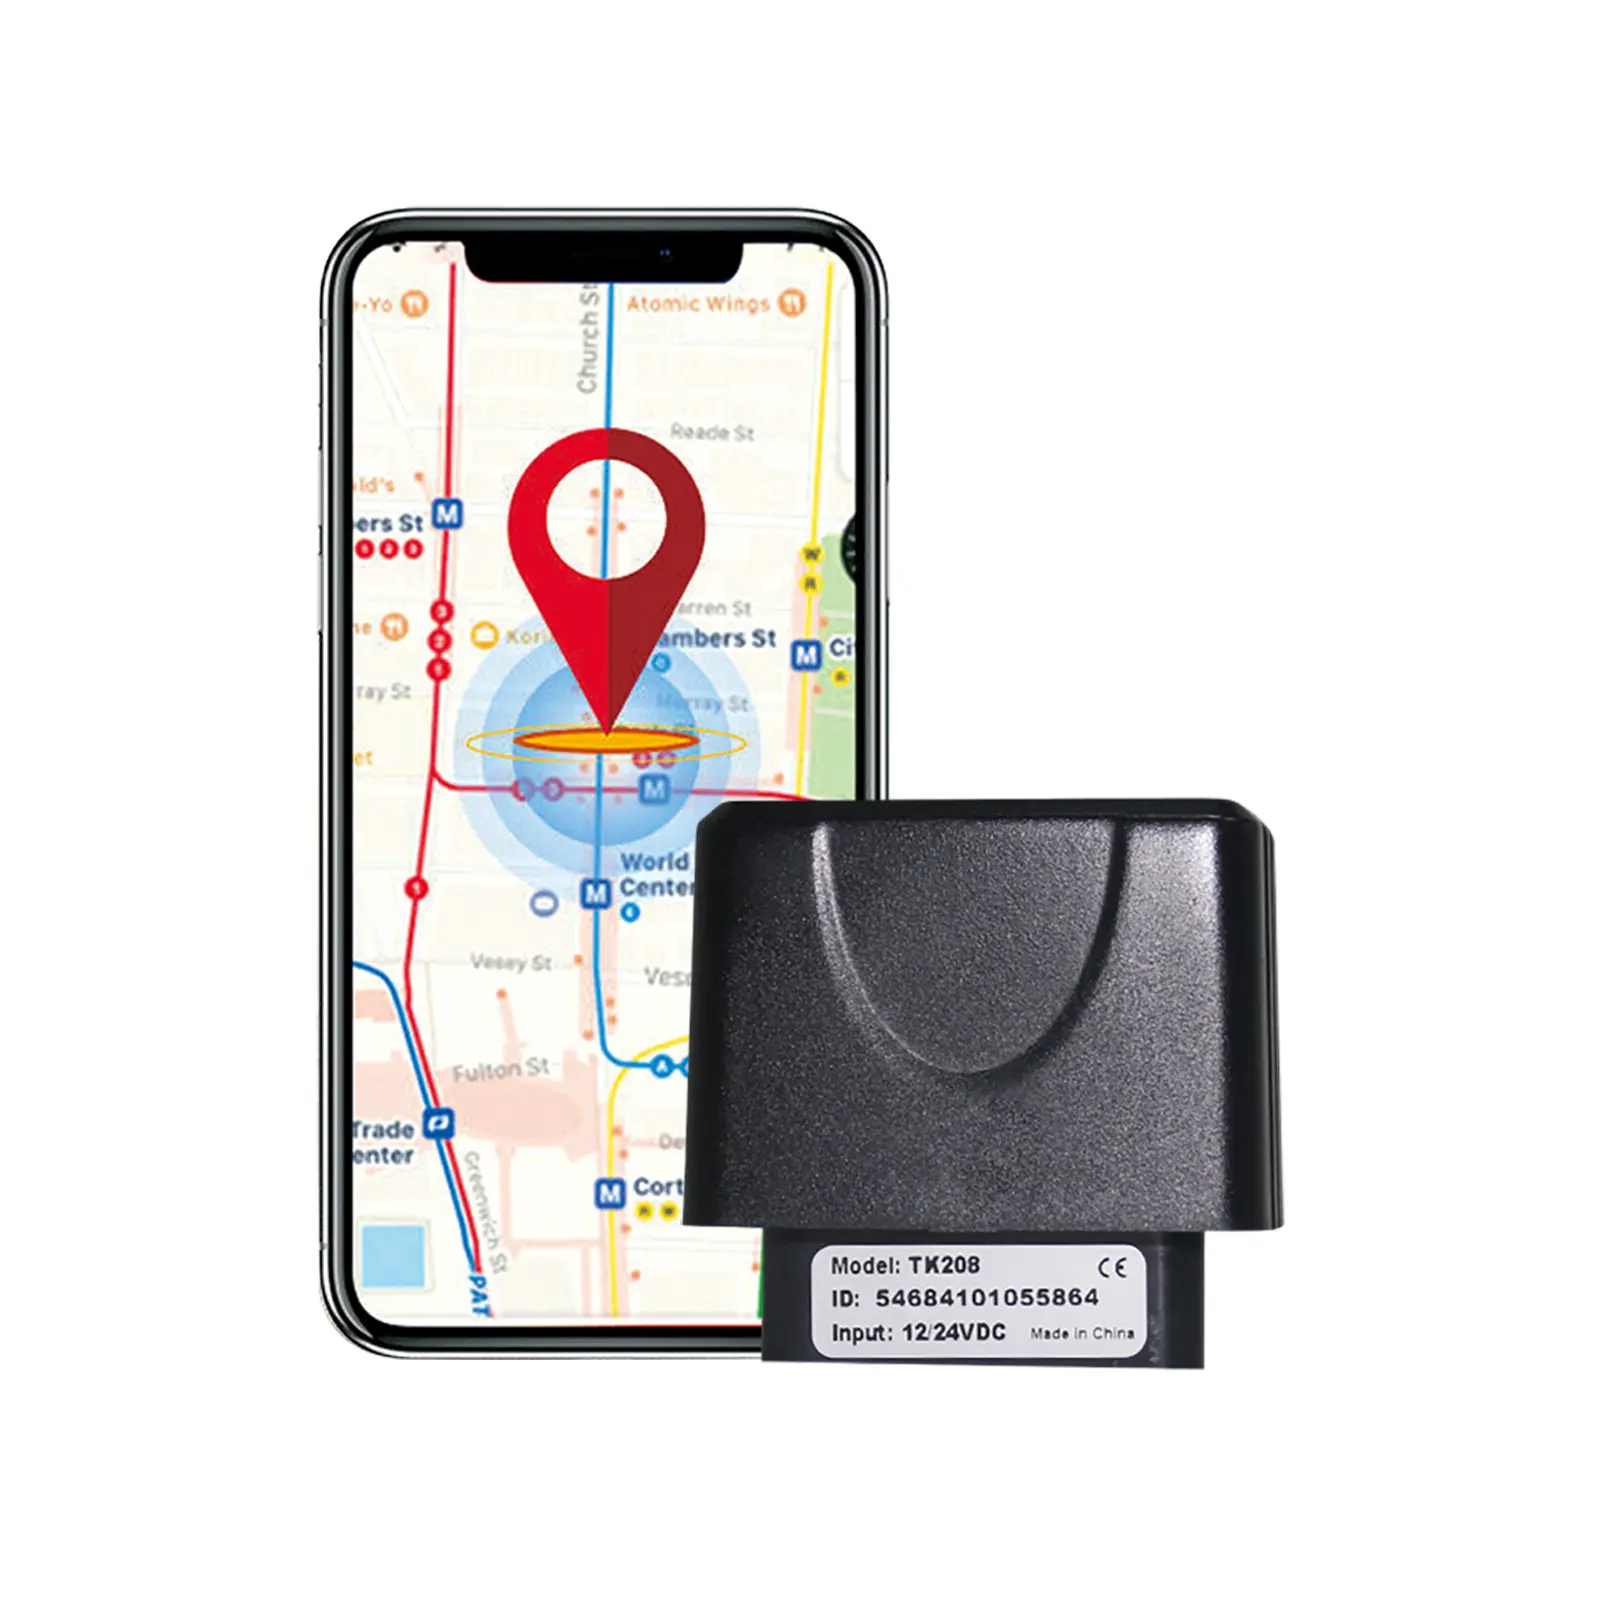 TOPTENプラグアンドプレイ2G OBD GPSトラッカーTK208、ボイスカーアラーム (TN) の監視をサポート